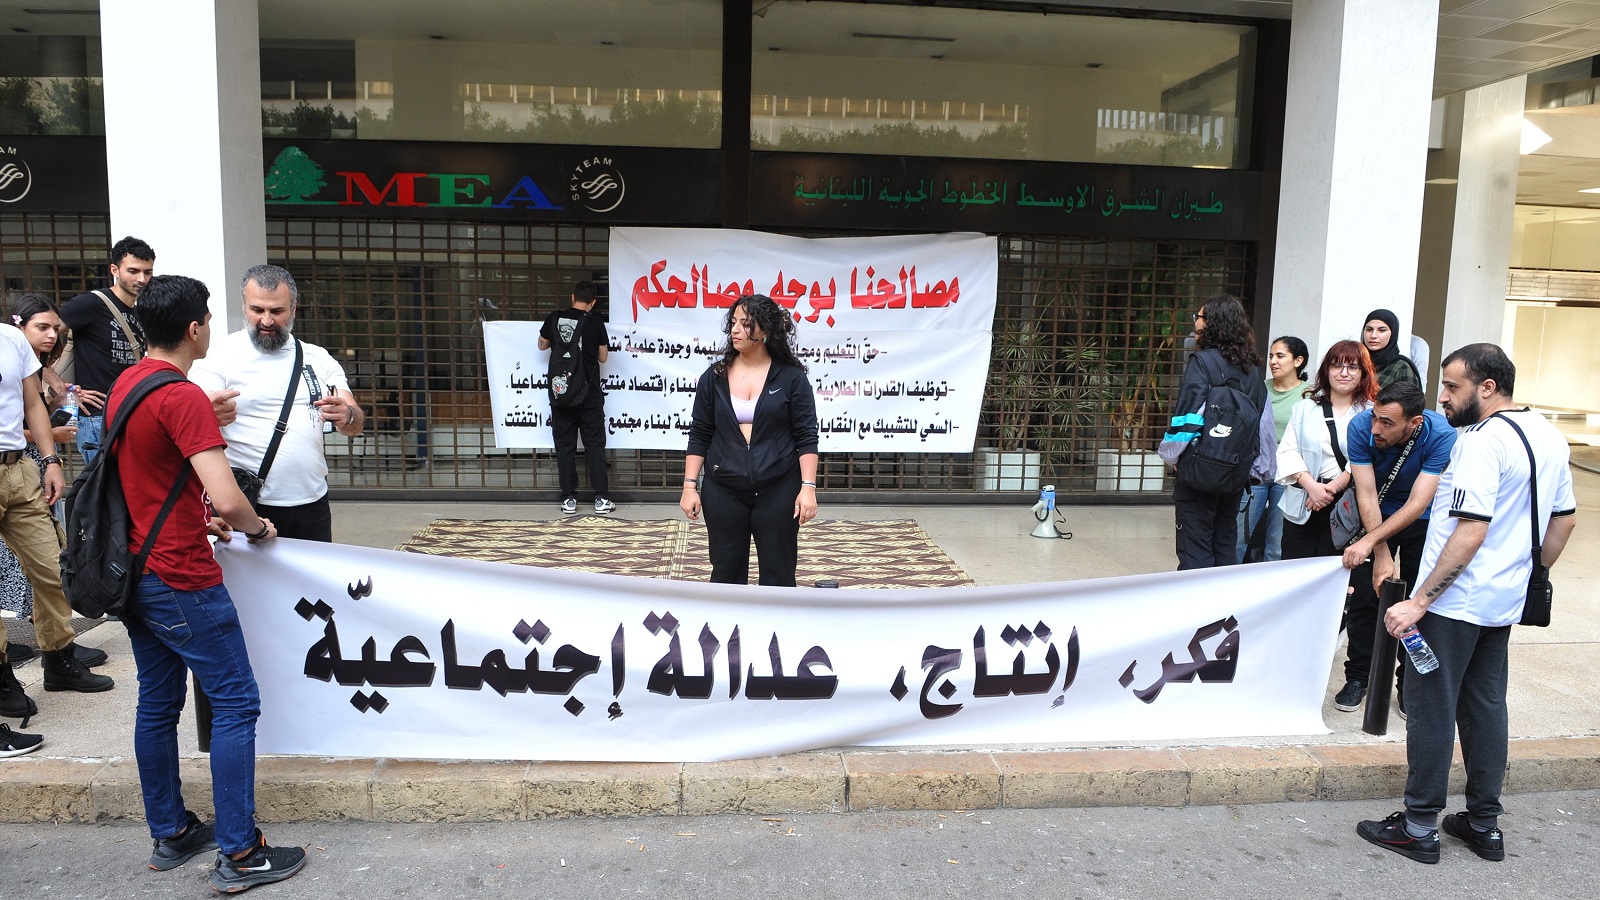 الطلاب أمام "الميدل إيست" بالحمرا: حقوق الجامعة اللبنانيّة المهدورة